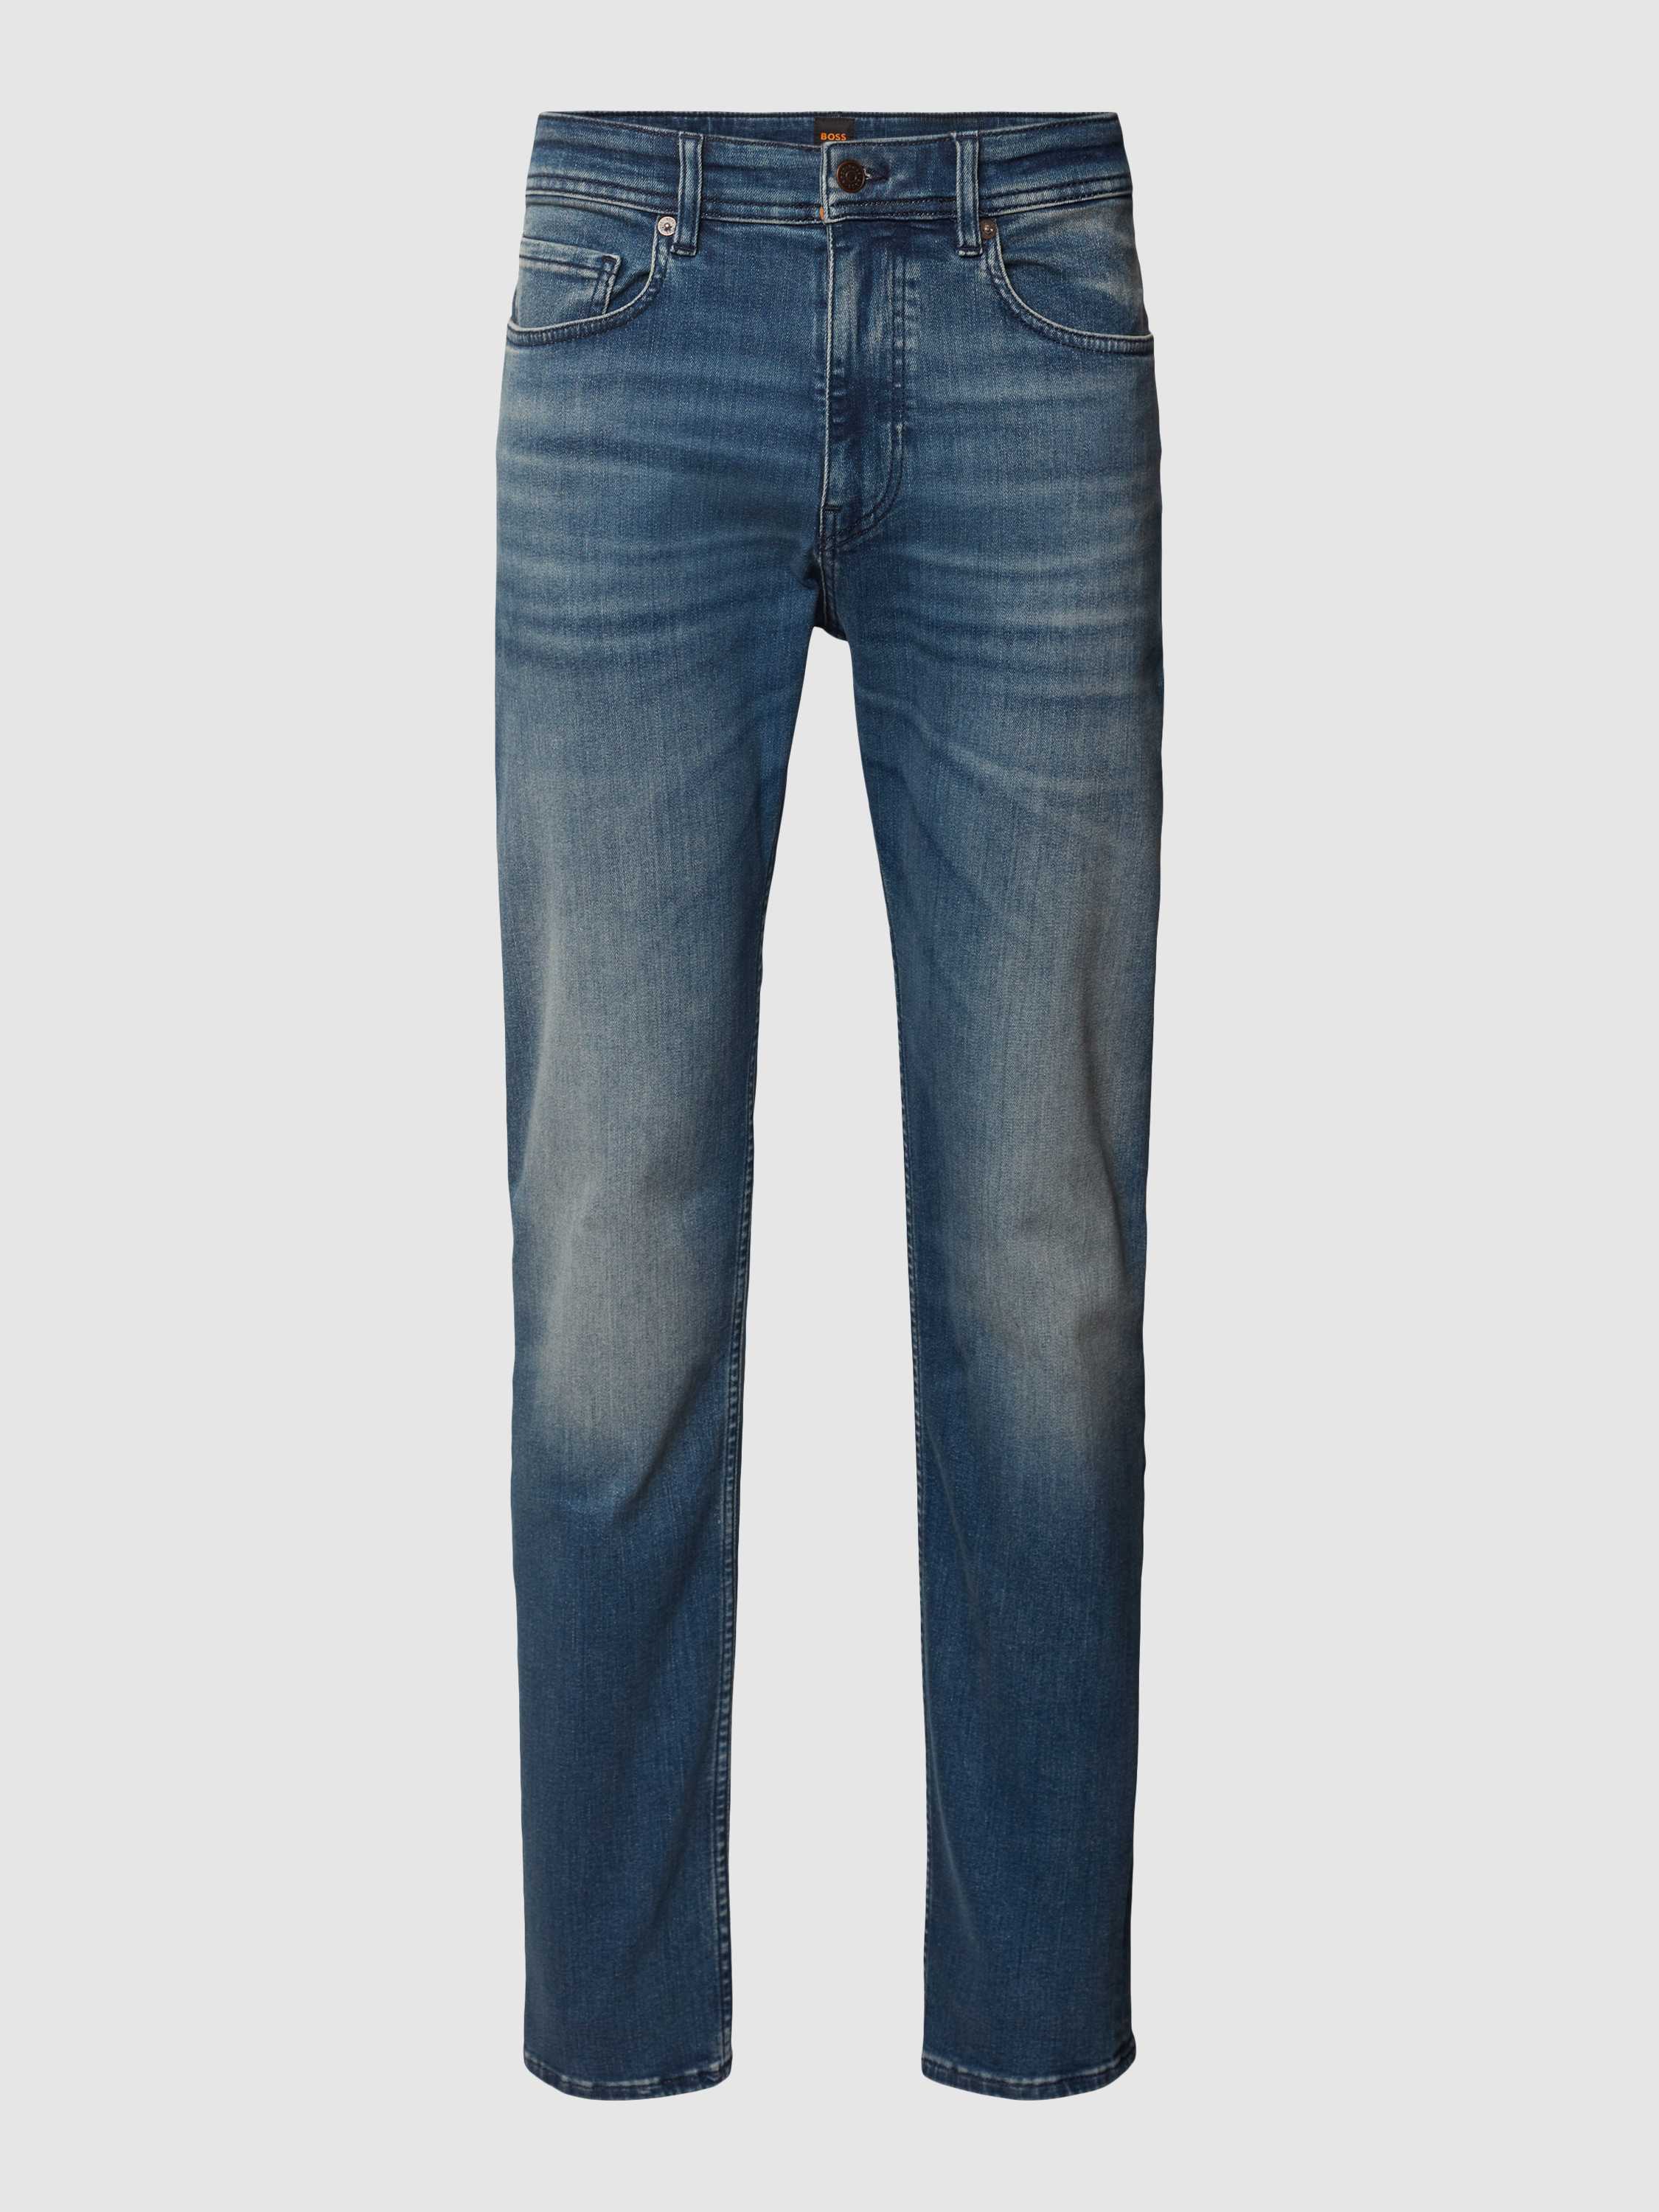 Tapered Fit Jeans mit Eingrifftaschen Modell 'TABER'